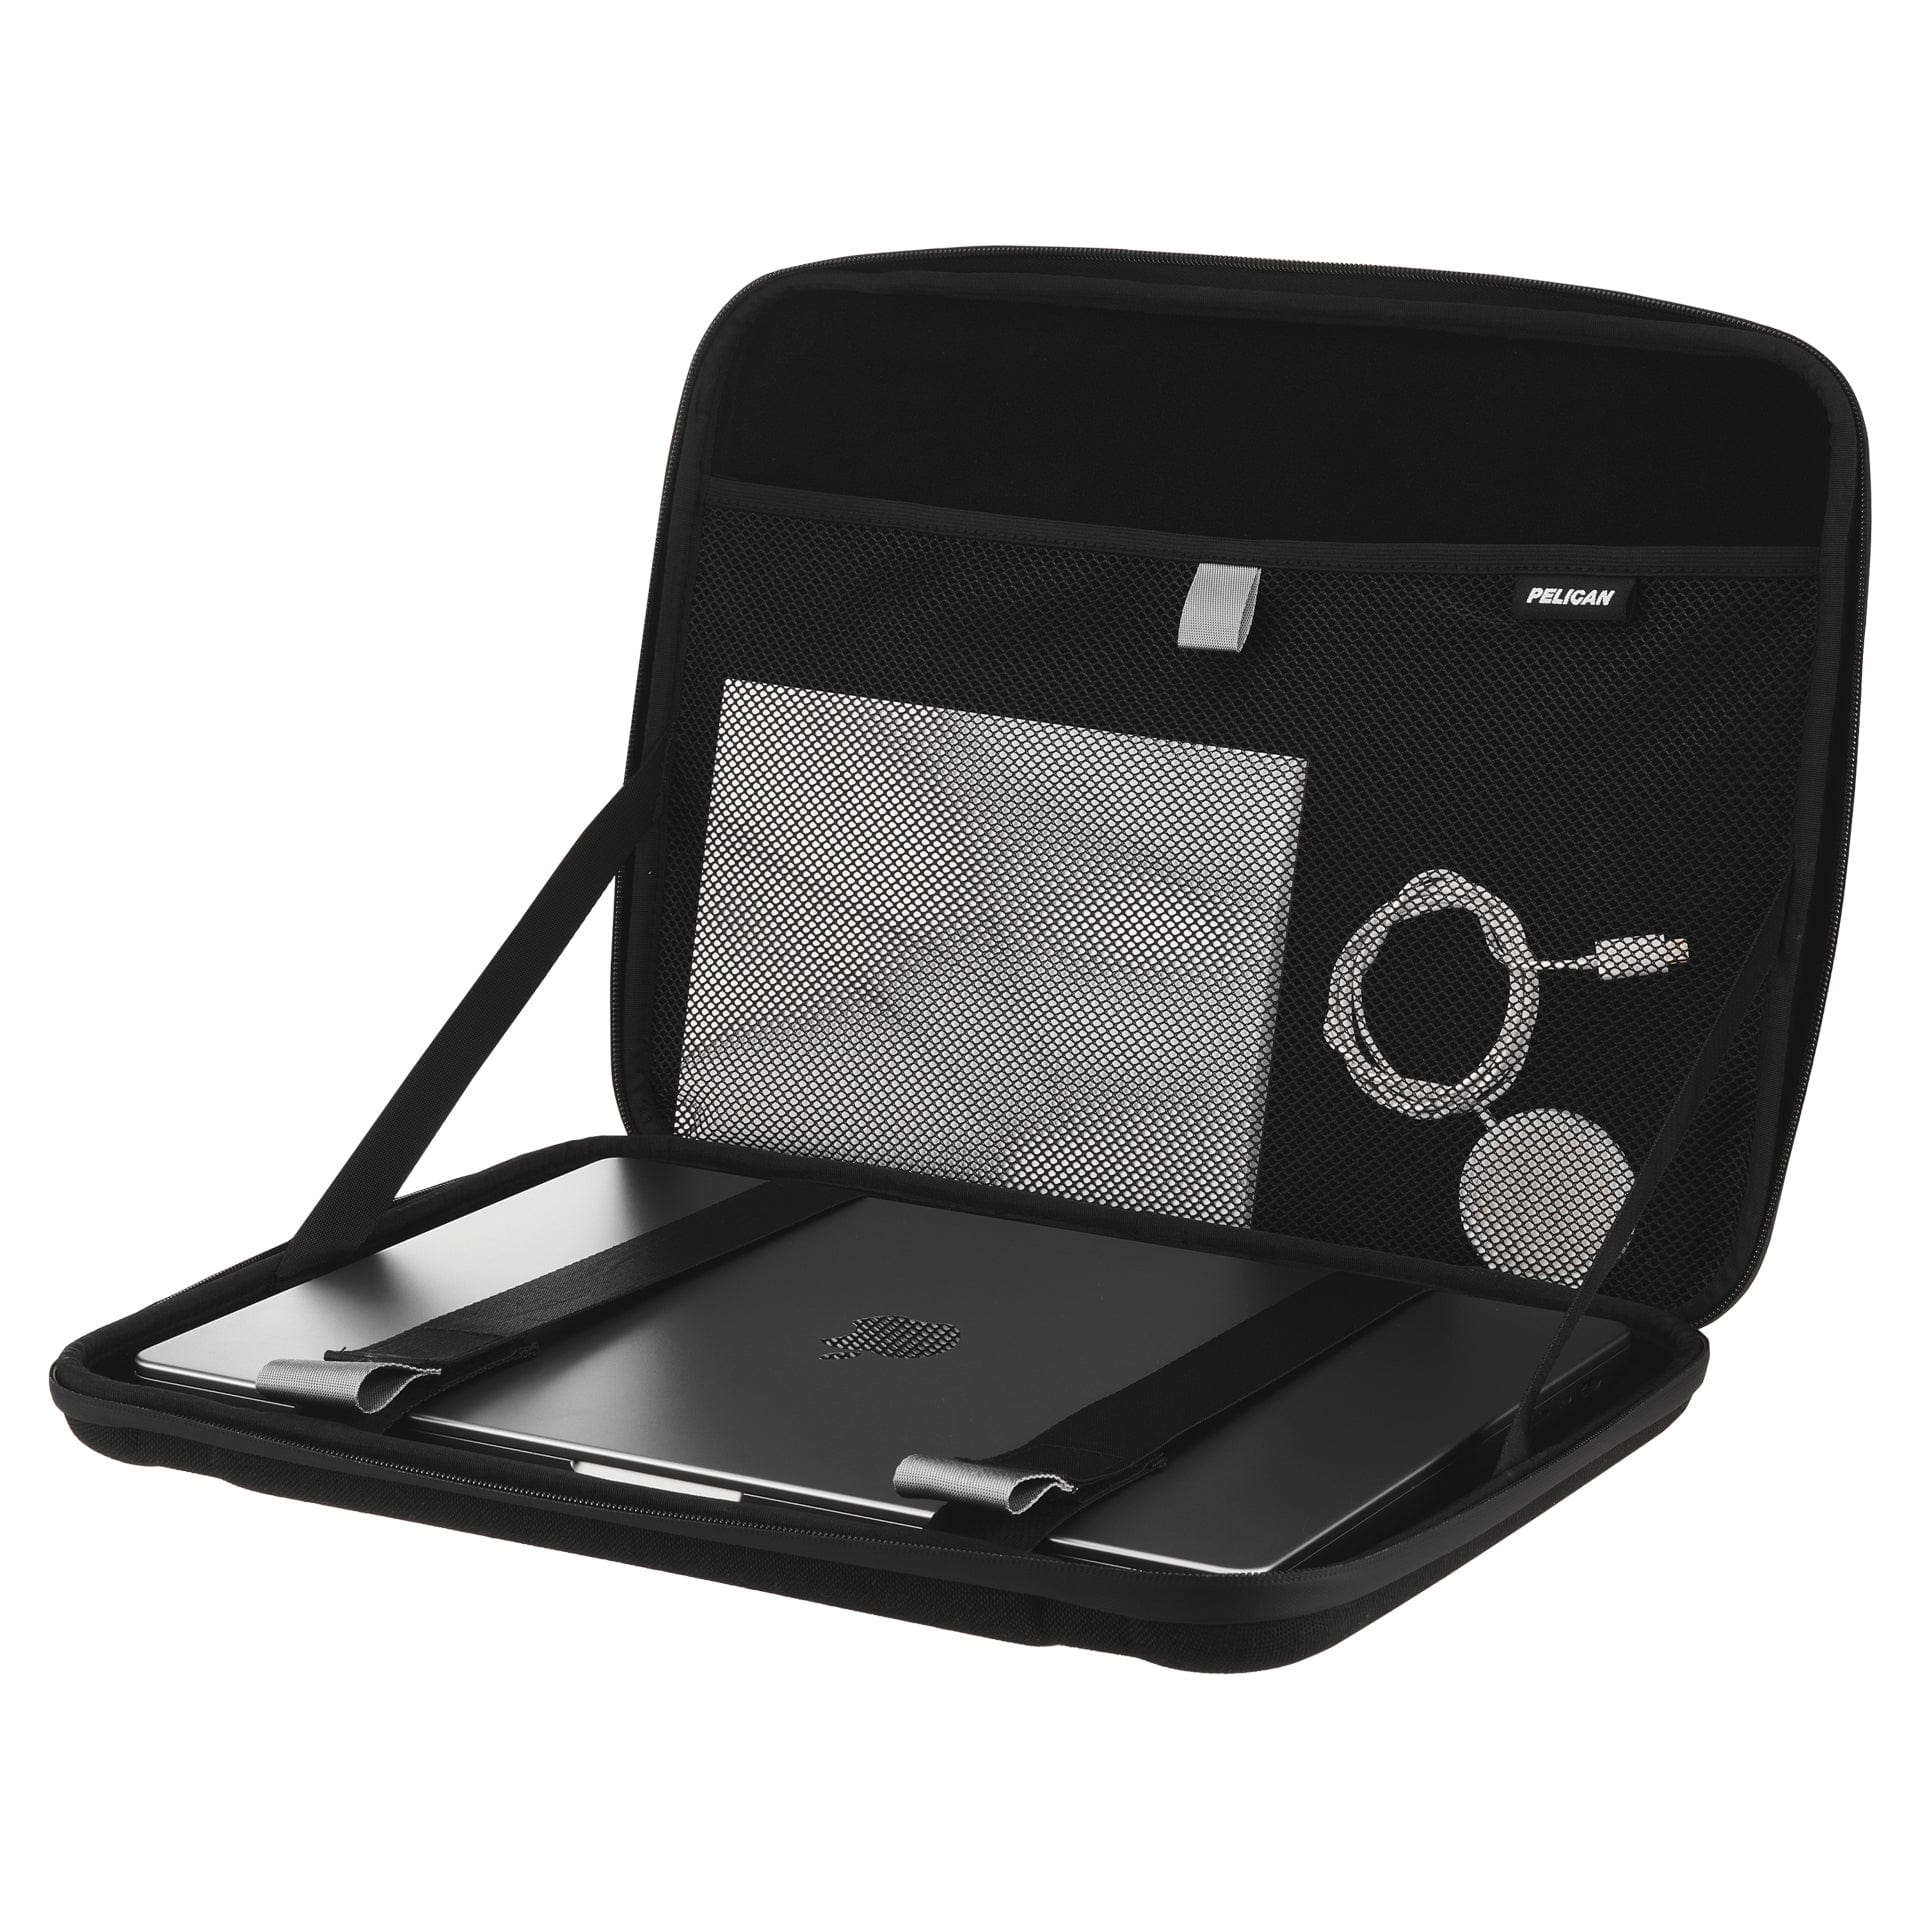 Pelican Adventurer Laptop Sleeve 16.2" (Black)